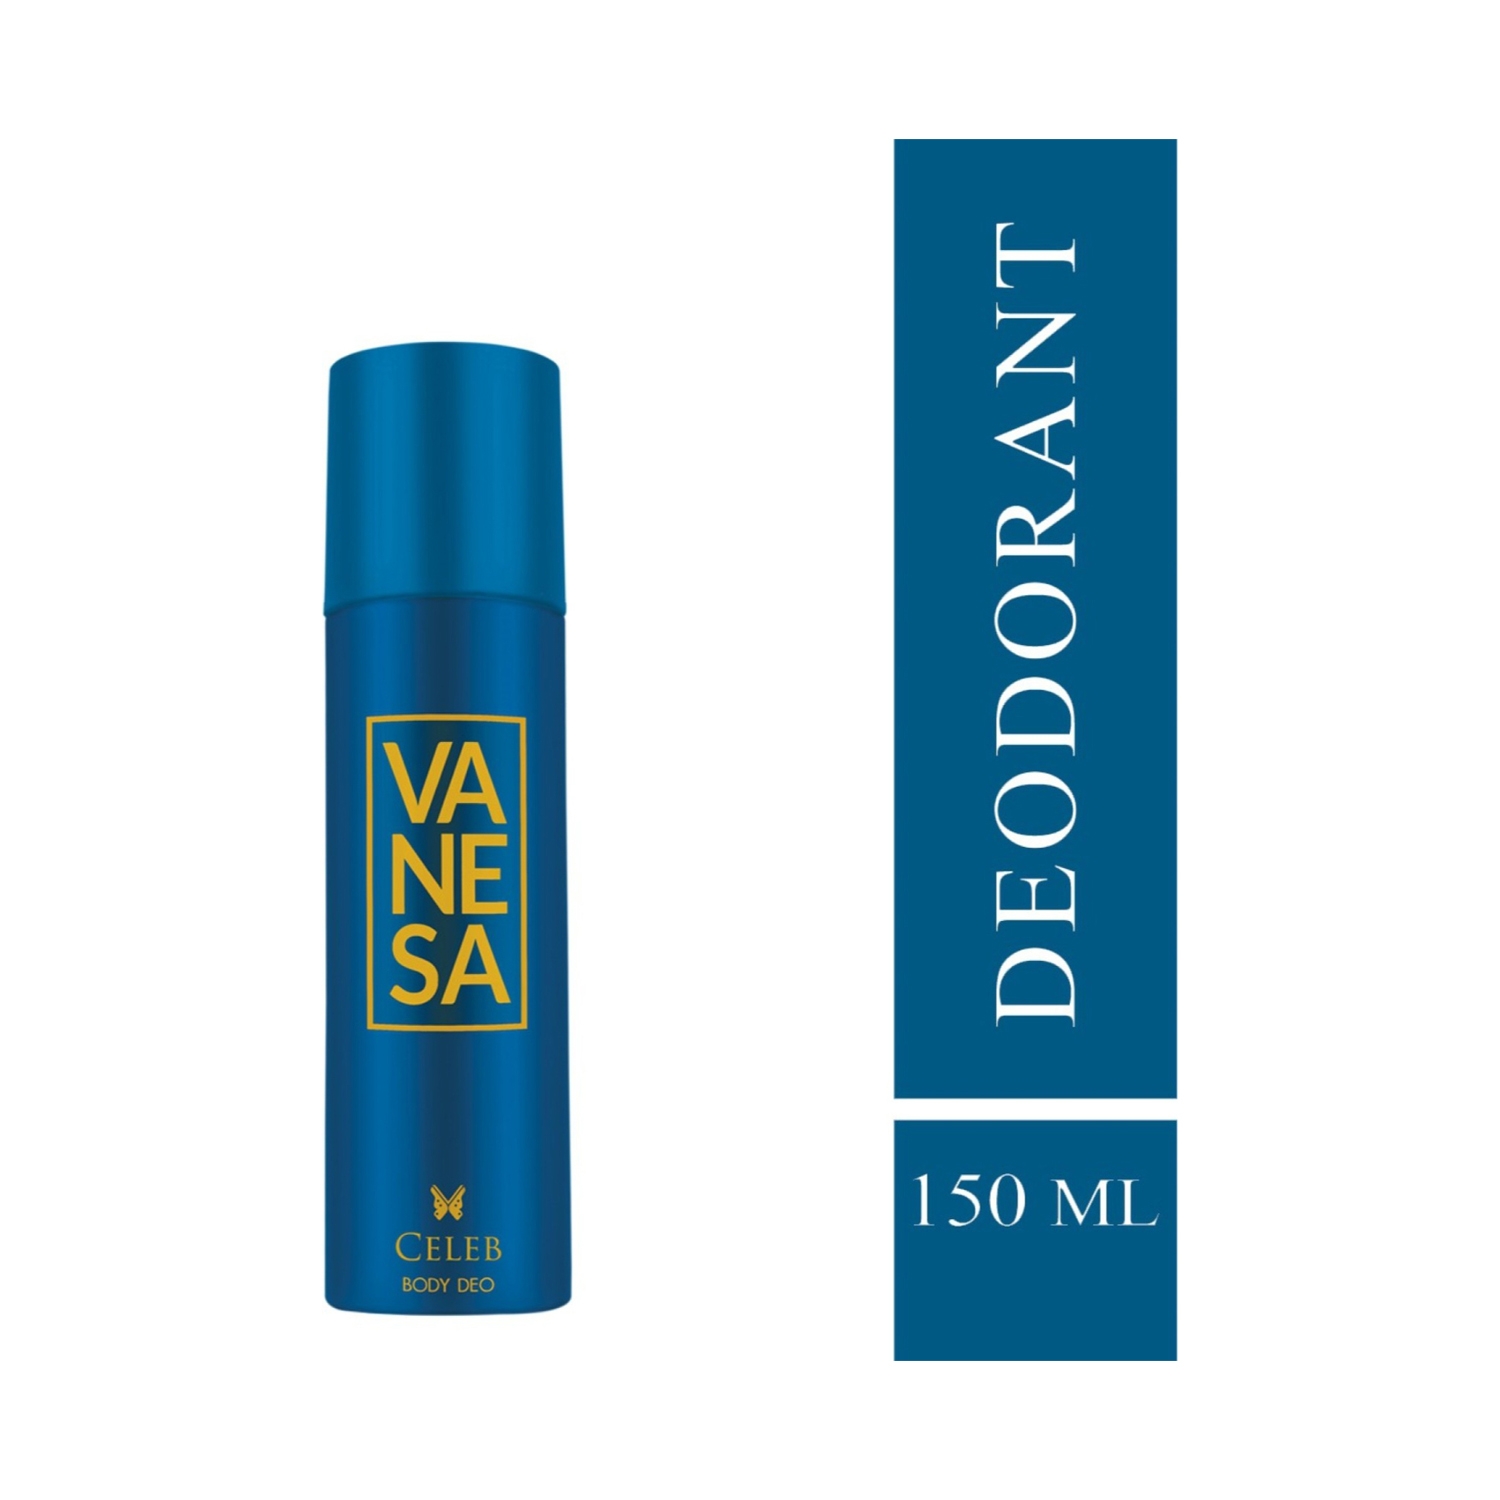 Vanesa | Vanesa Celeb Deodorant Body Spray (150ml)